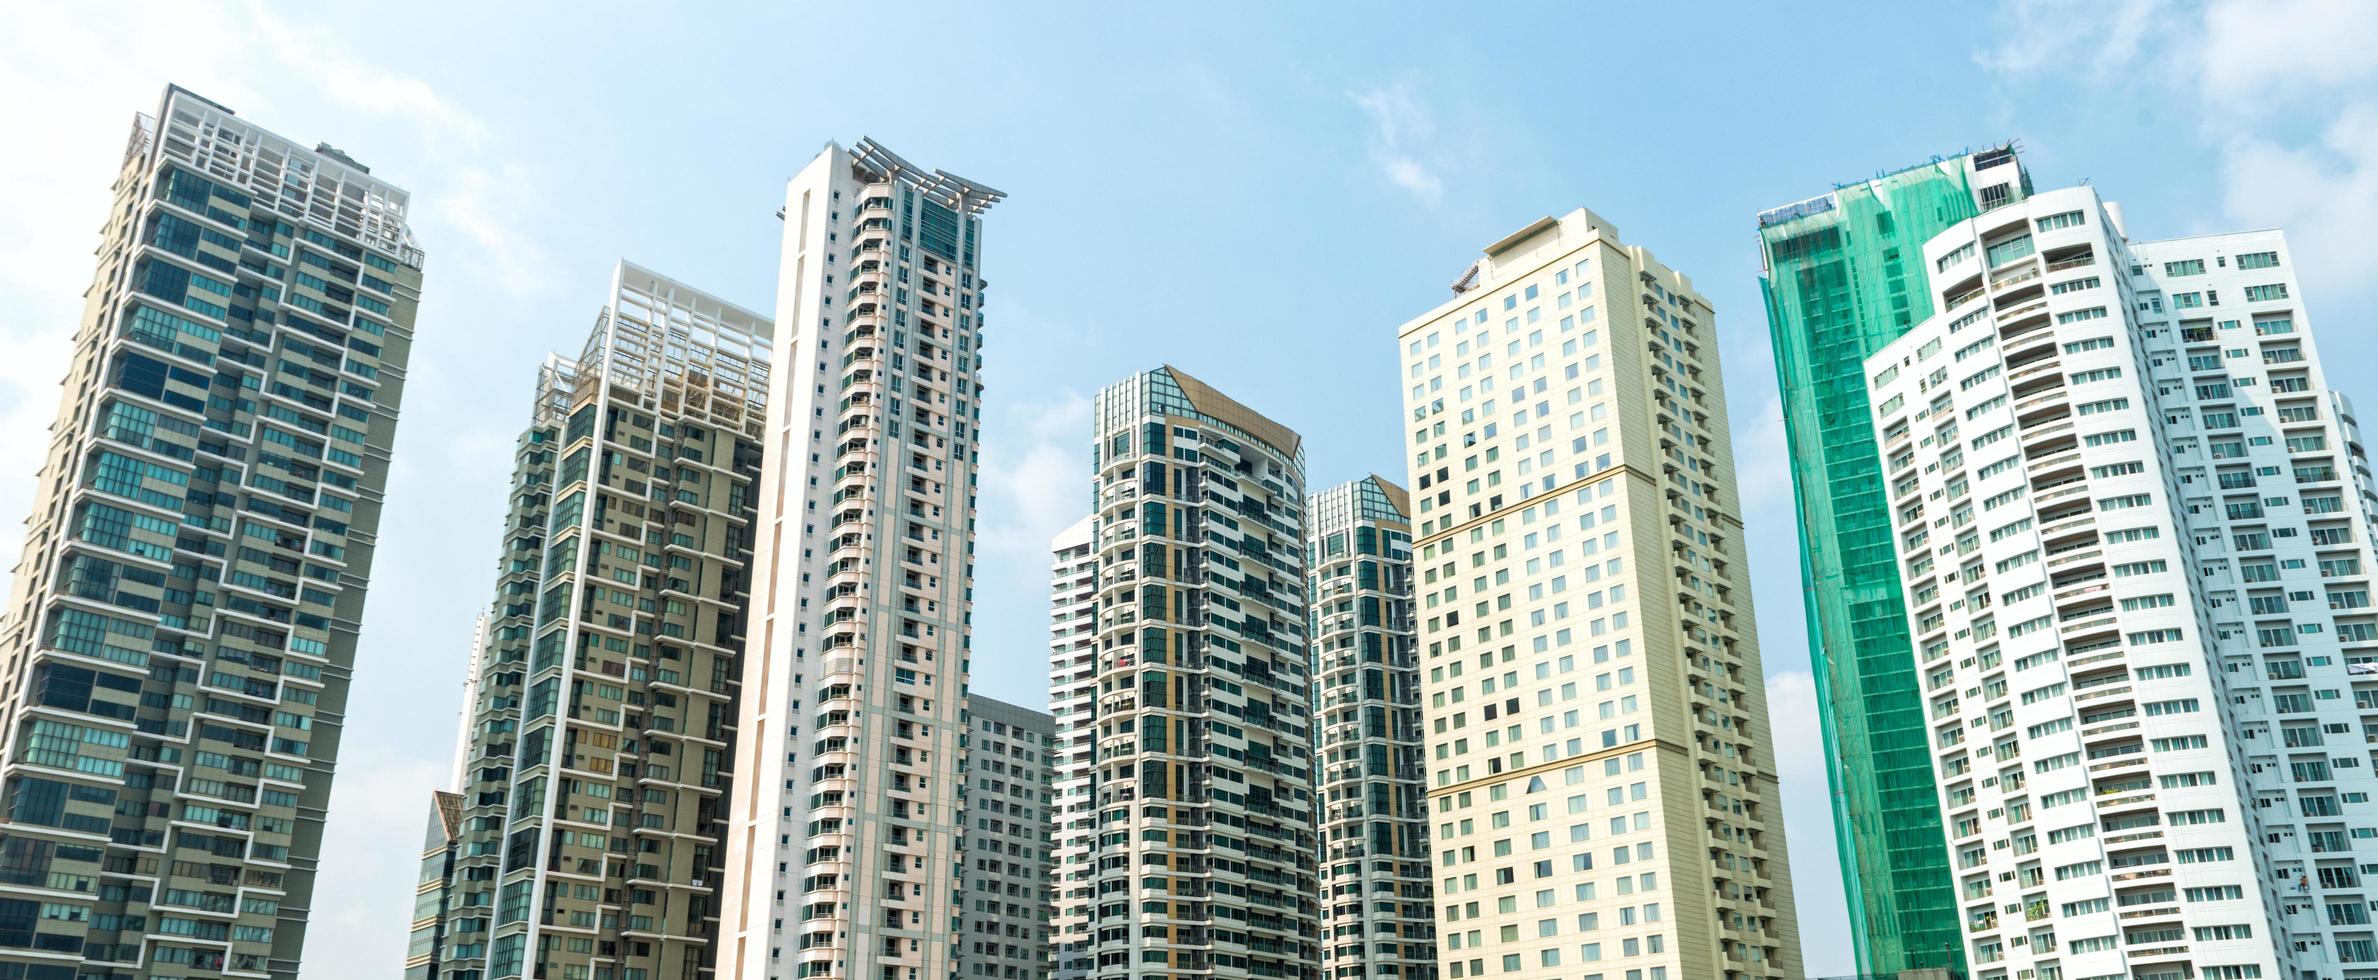 modèle de balcon de bâtiment en thaïlande photo